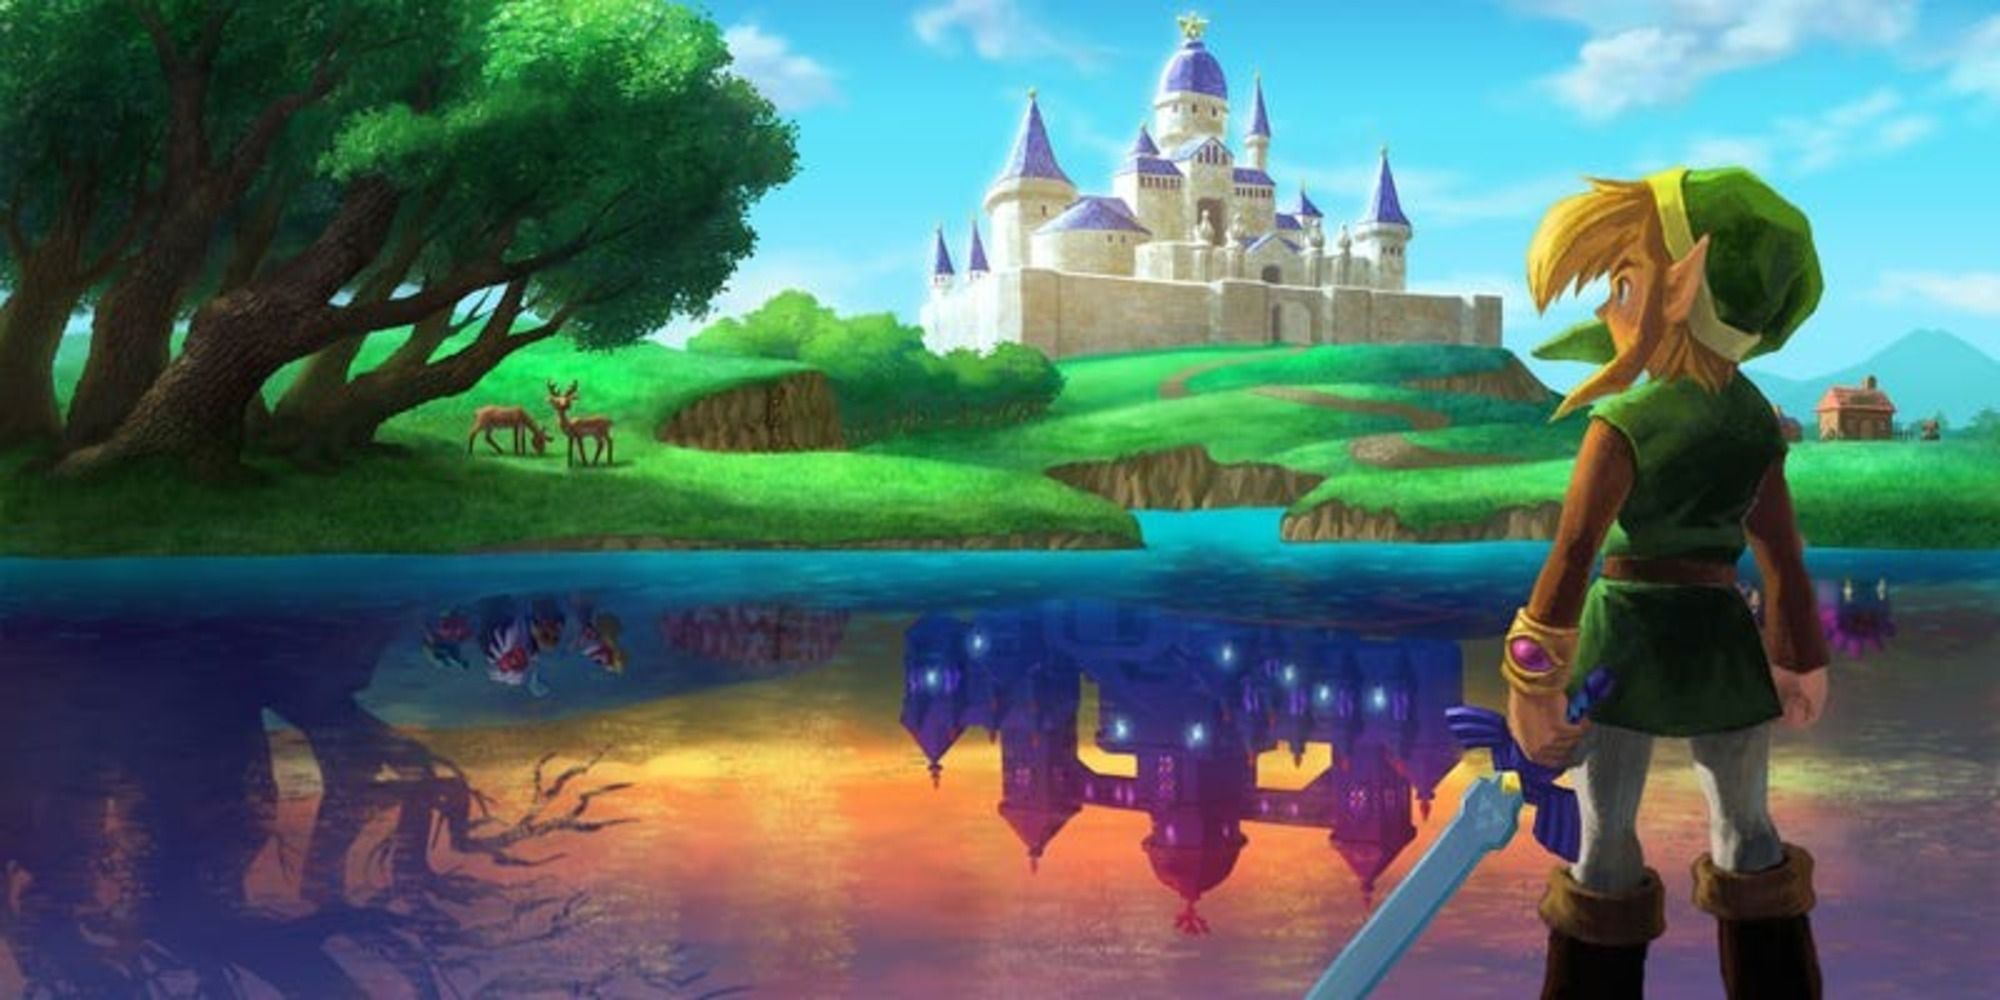 The legend of Zelda a link between worlds artwork of Link staring a deer cult lake parrakek dimension Hyrule lorule